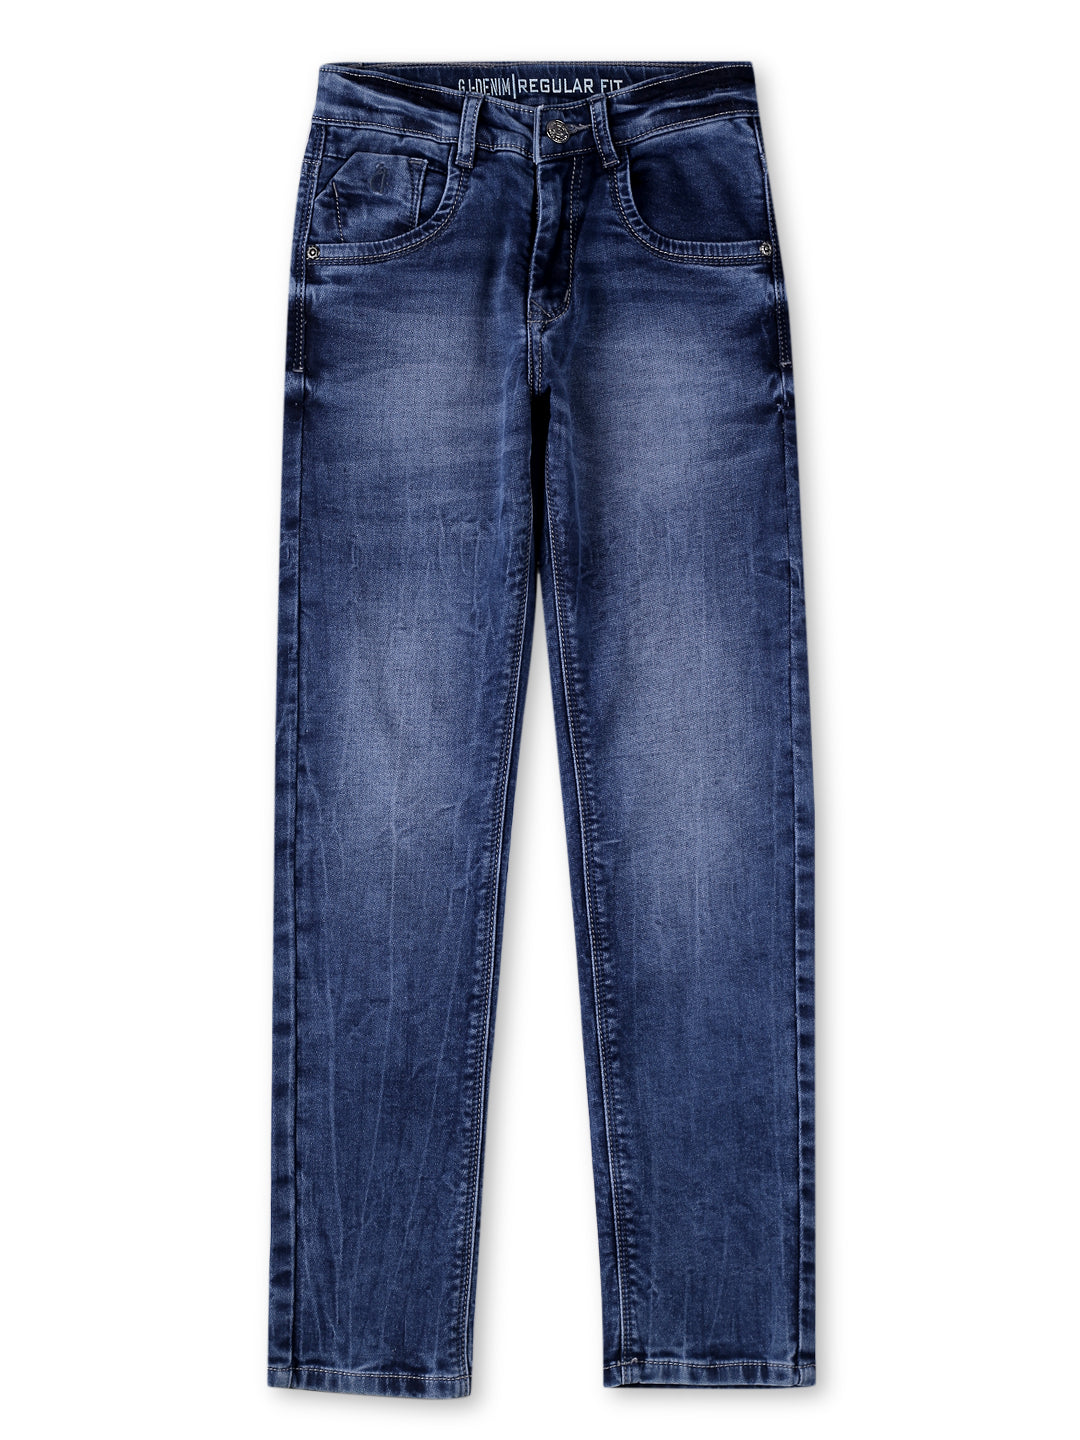 Boys Blue Cotton Denim Solid Jeans